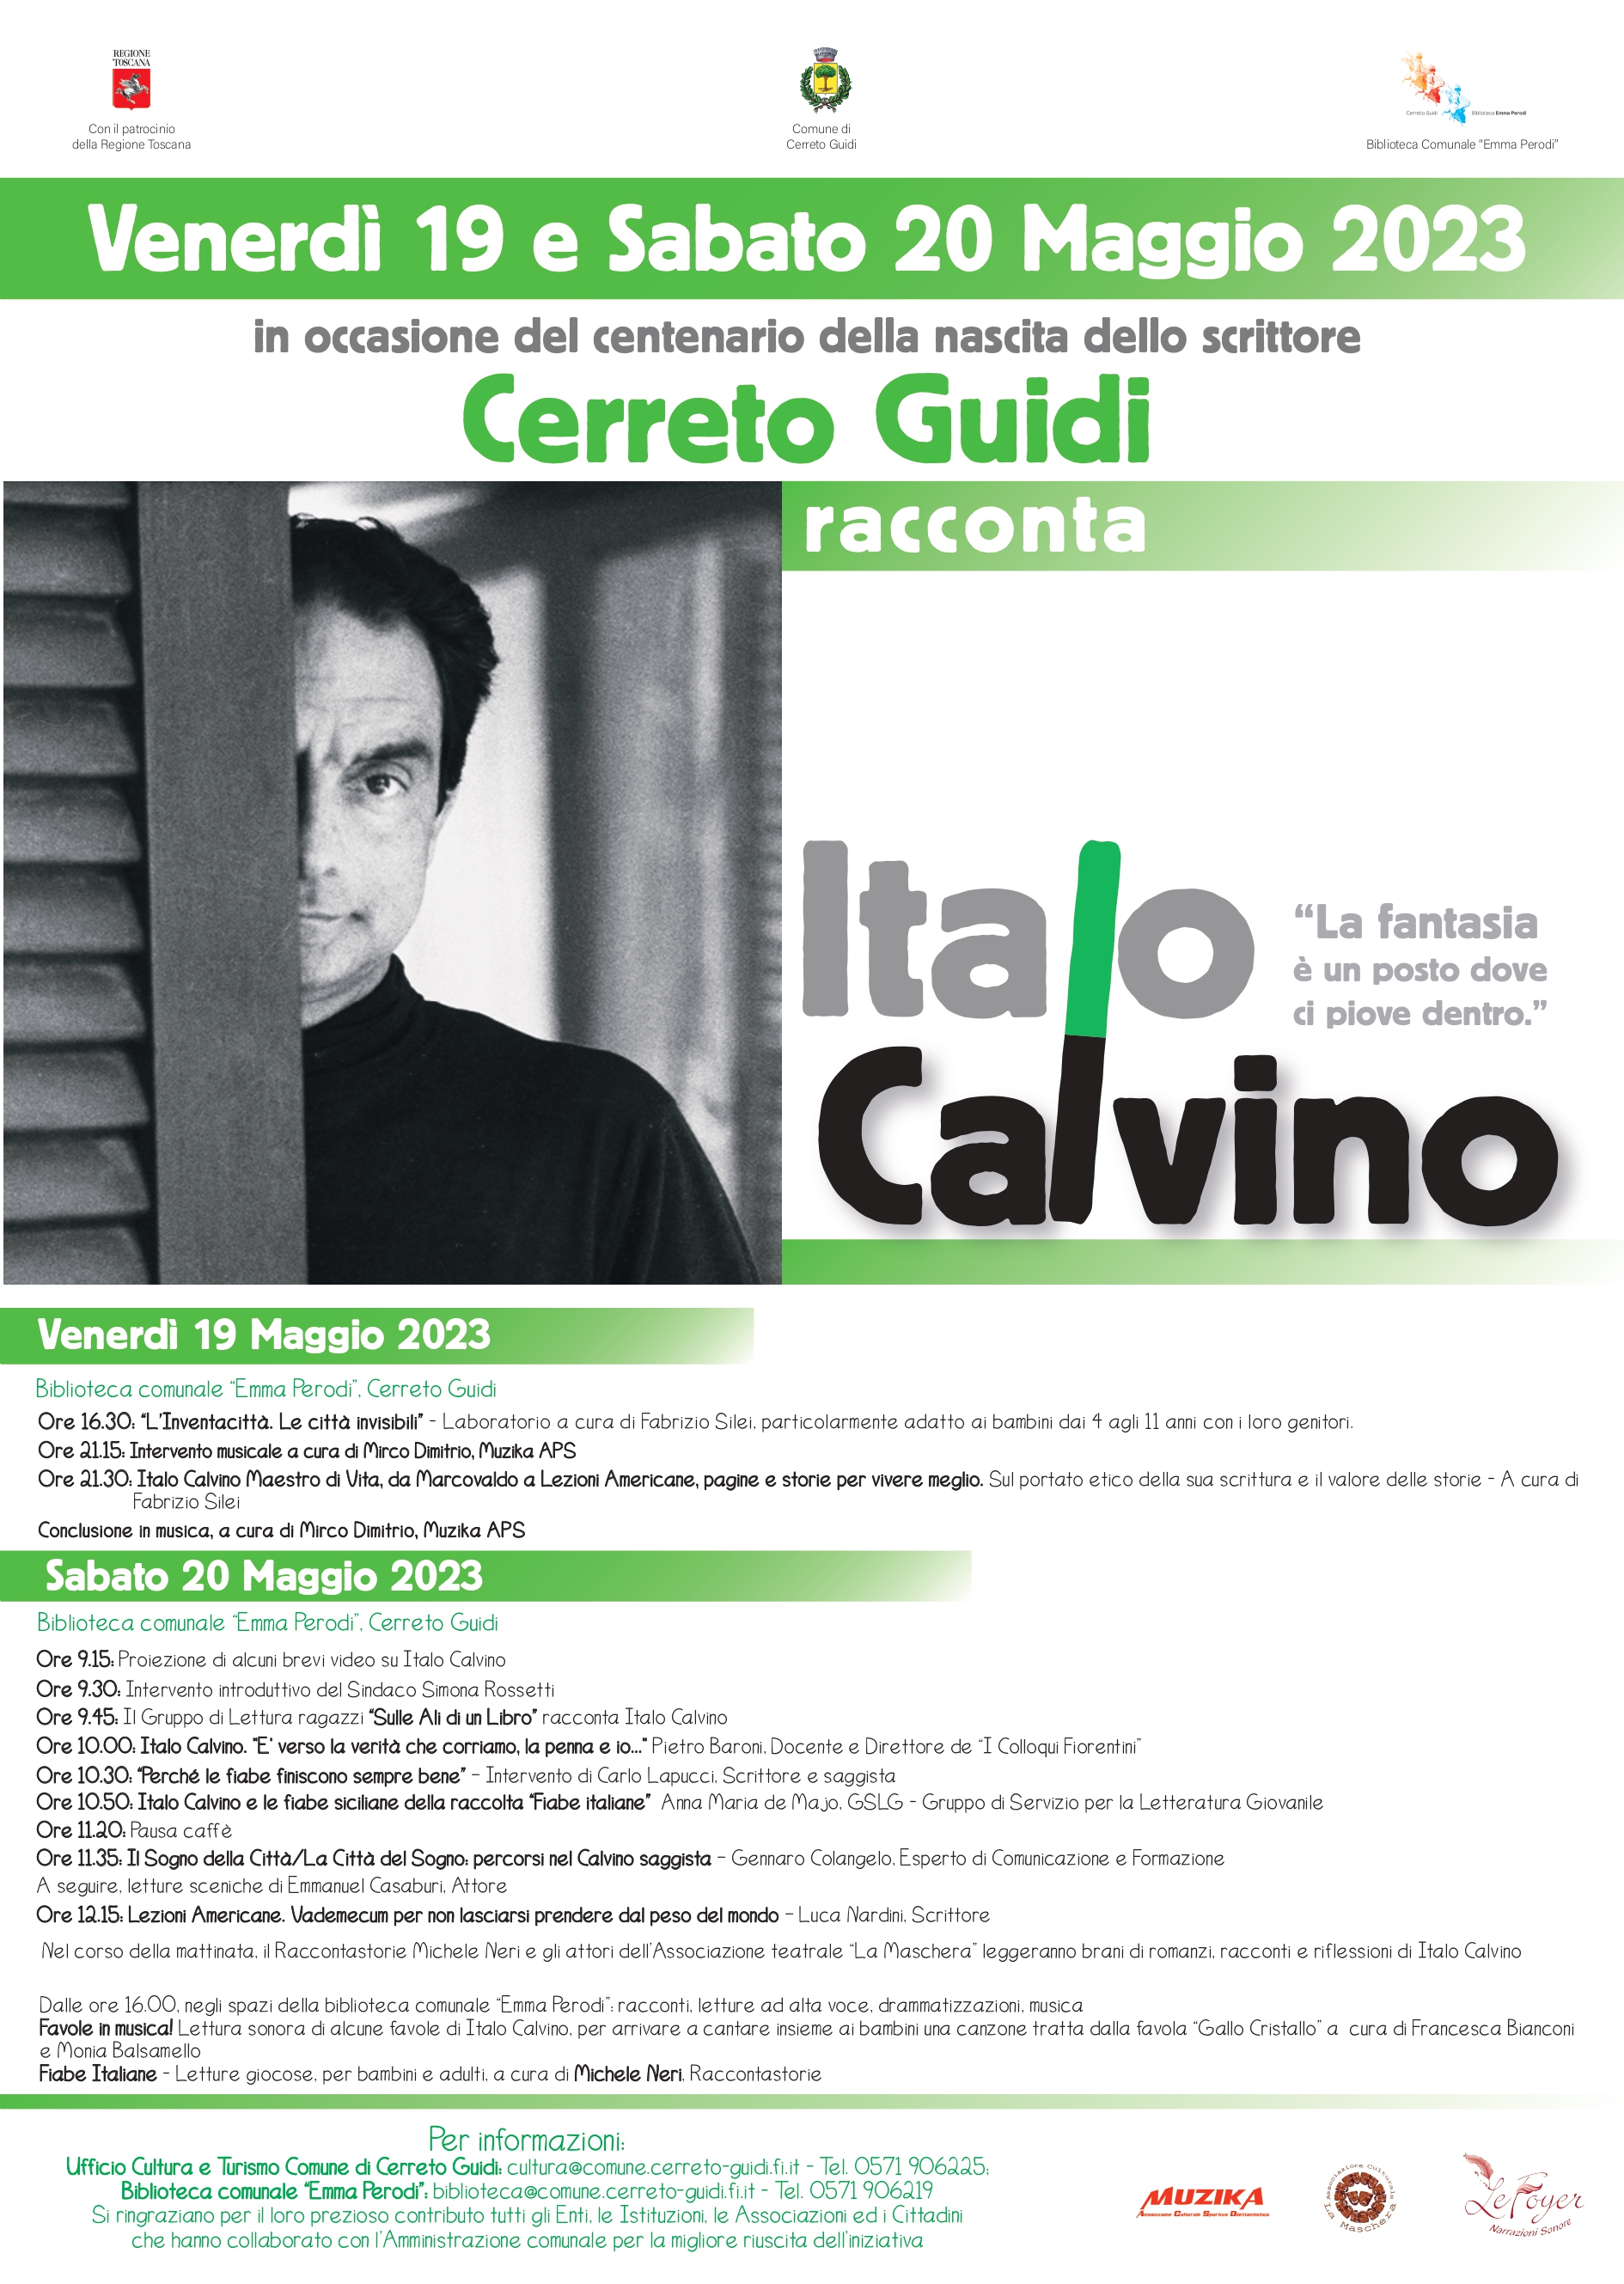 Italo Calvino raccontato in due giornate